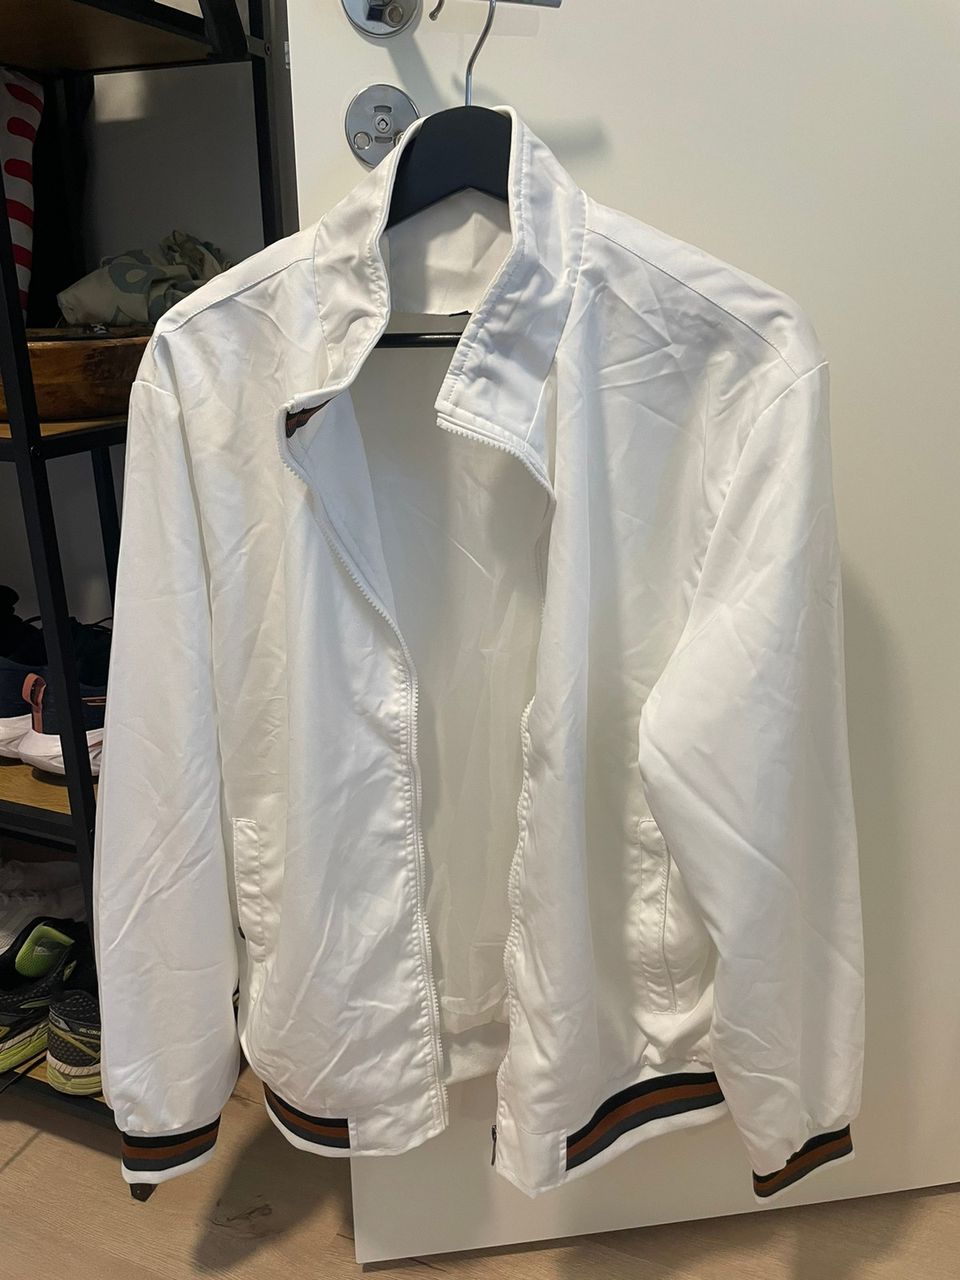 Valkoinen takki